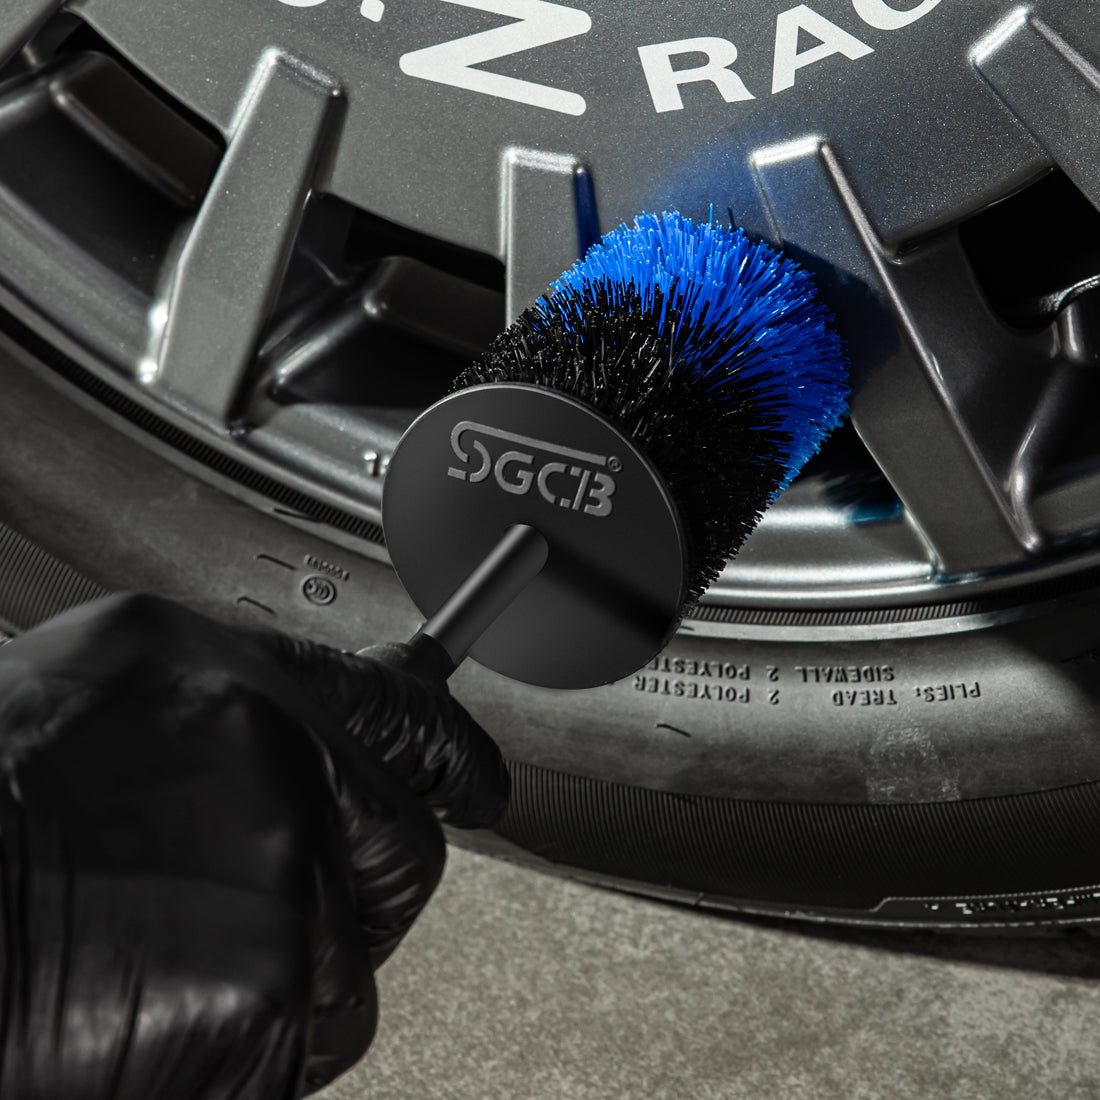 TTRCB 20pcs Car Detailing Brush Set, Car Wheel Tire Brush Set, Car Detailing Kit with 17 Rim Wheel Brush, Tire Brush, Car Cleaning Kit for Cleaning